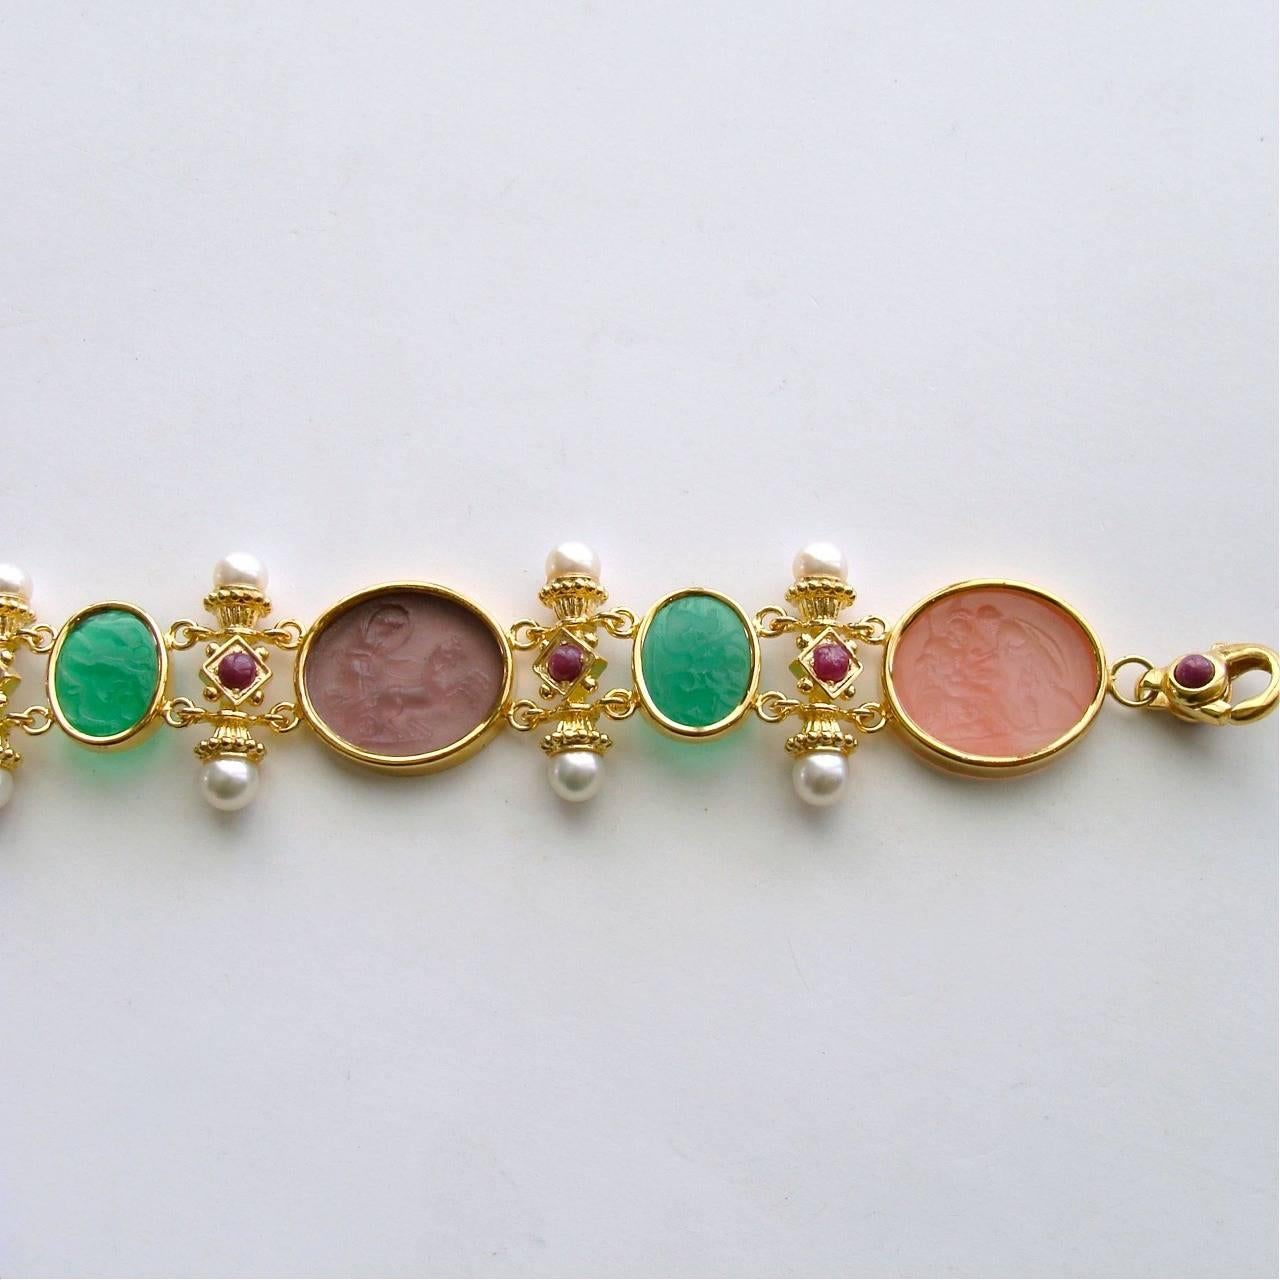 Venetian Glass Intaglios Pearls Rubies Bracelet 1